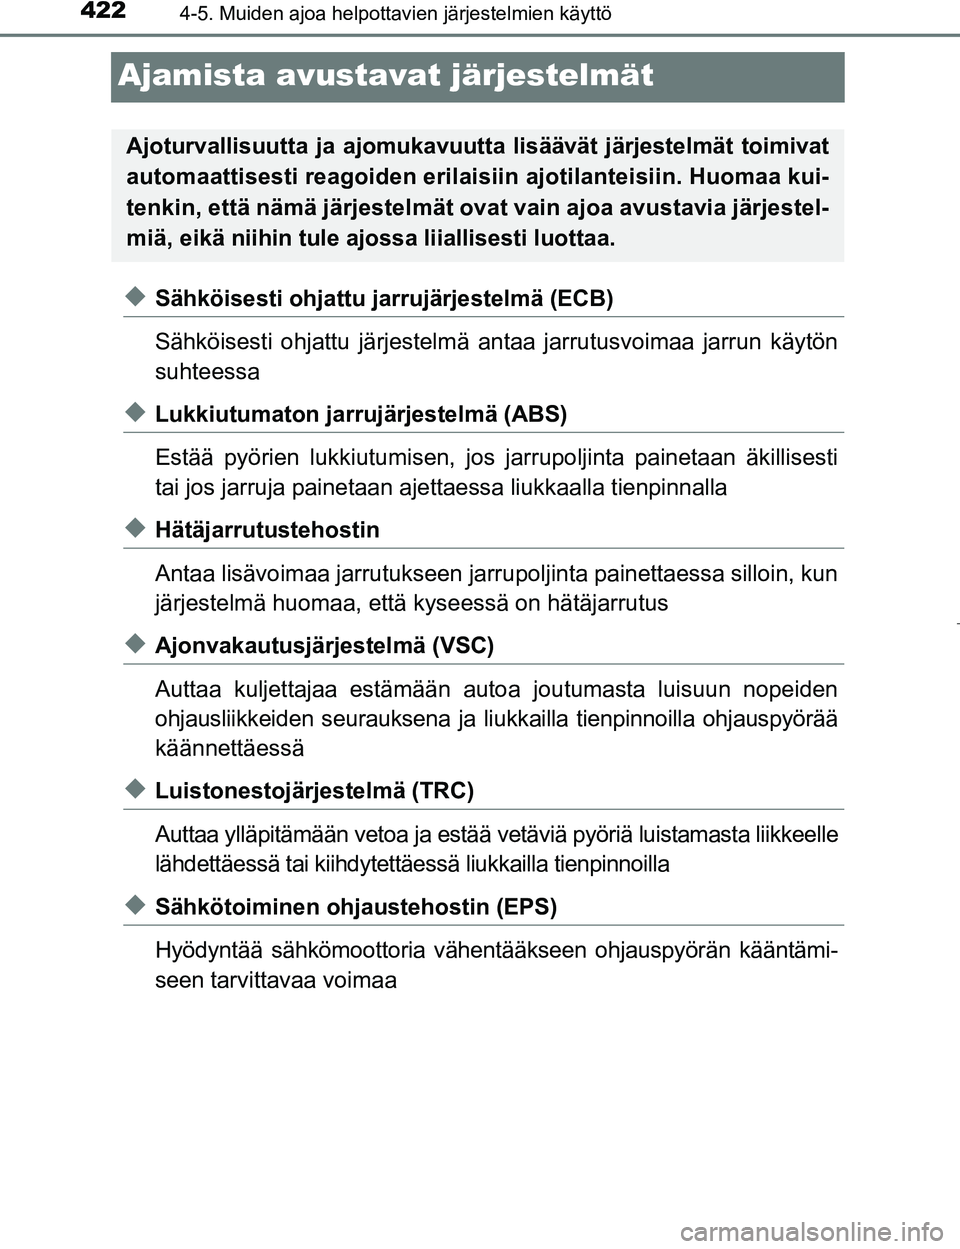 TOYOTA PRIUS 2017  Omistajan Käsikirja (in Finnish) 4224-5. Muiden ajoa helpottavien järjestelmien käyttö
OM47B56FI
Ajamista avustavat järjestelmät
uSähköisesti ohjattu jarrujärjestelmä (ECB)
Sähköisesti ohjattu järjestelmä antaa jarrutusv